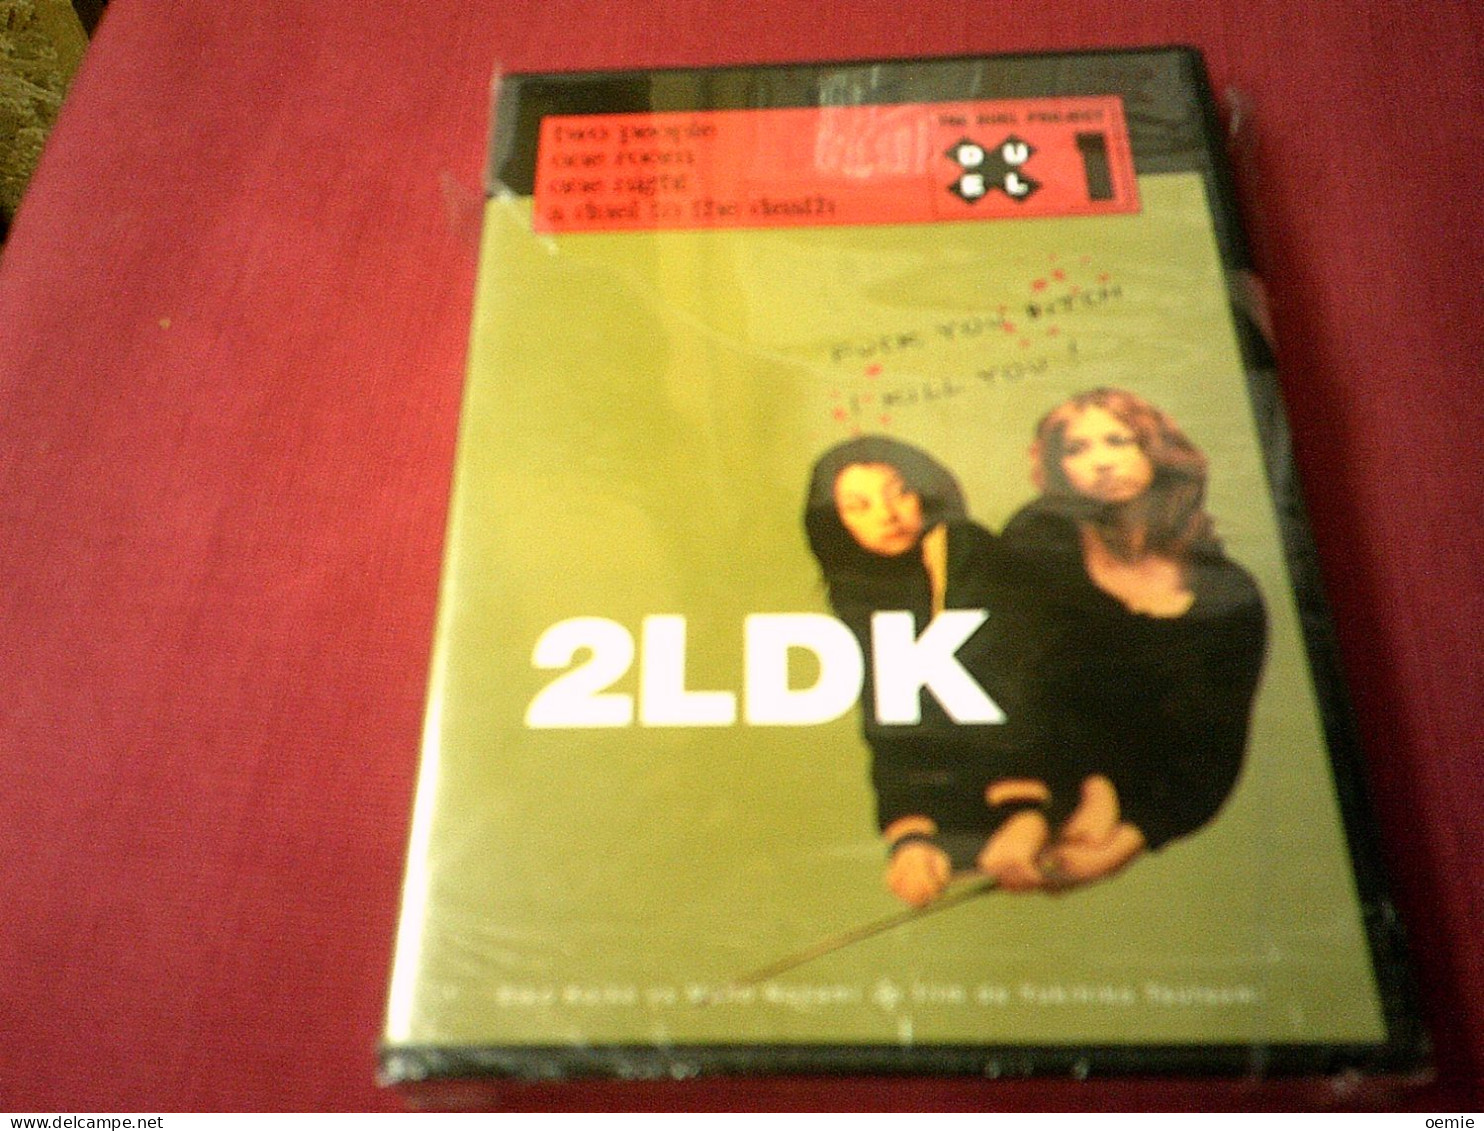 2LDK  FILM DE YUKIHIKO TSUTSUMI - Horror